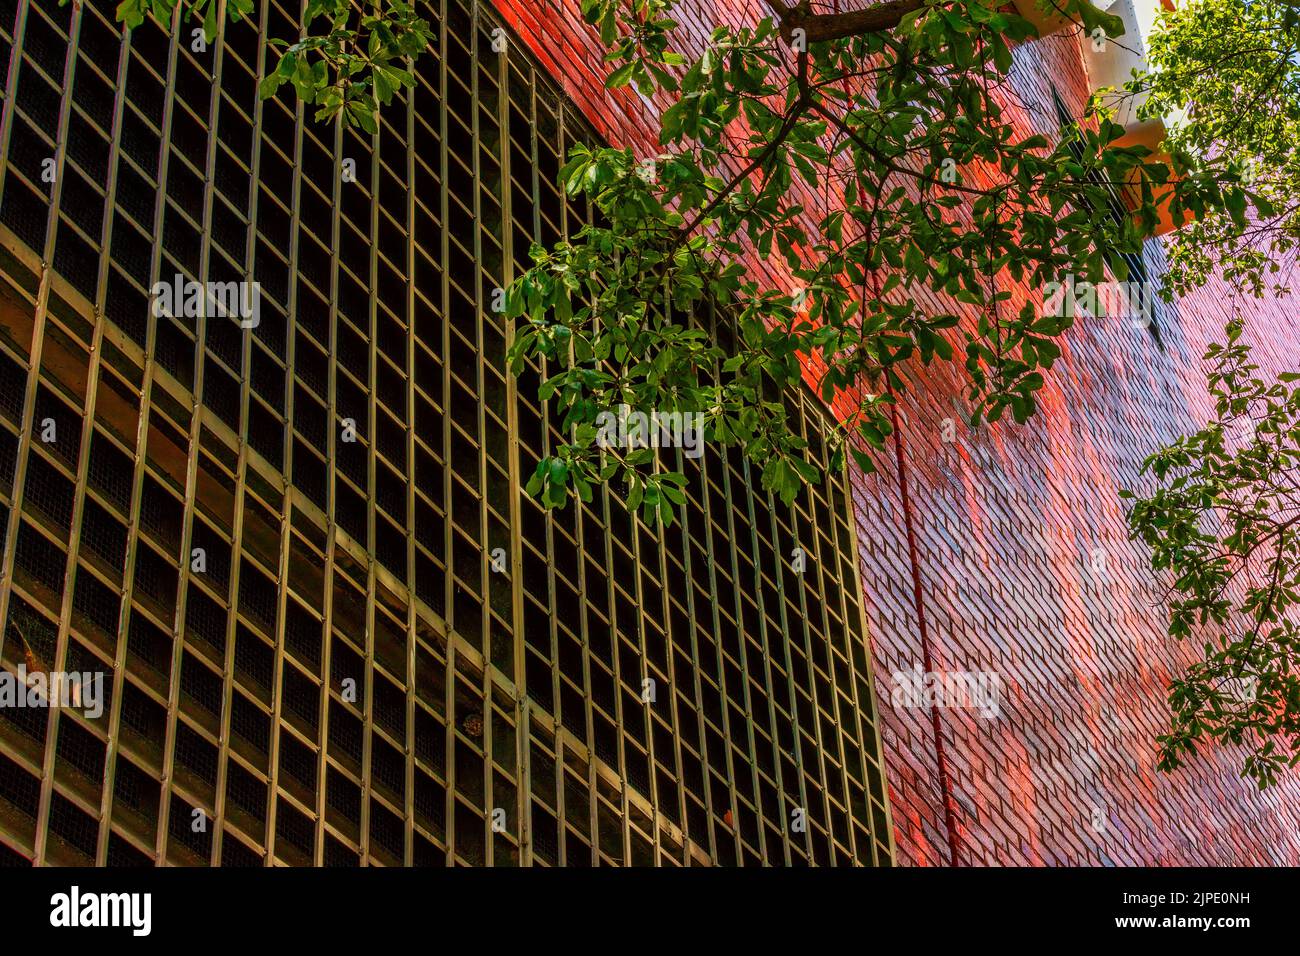 Ramas de árboles con hojas verdes delante de una pared exterior de ladrillo rojo brillante y rejilla metálica para los fondos. Foto de stock